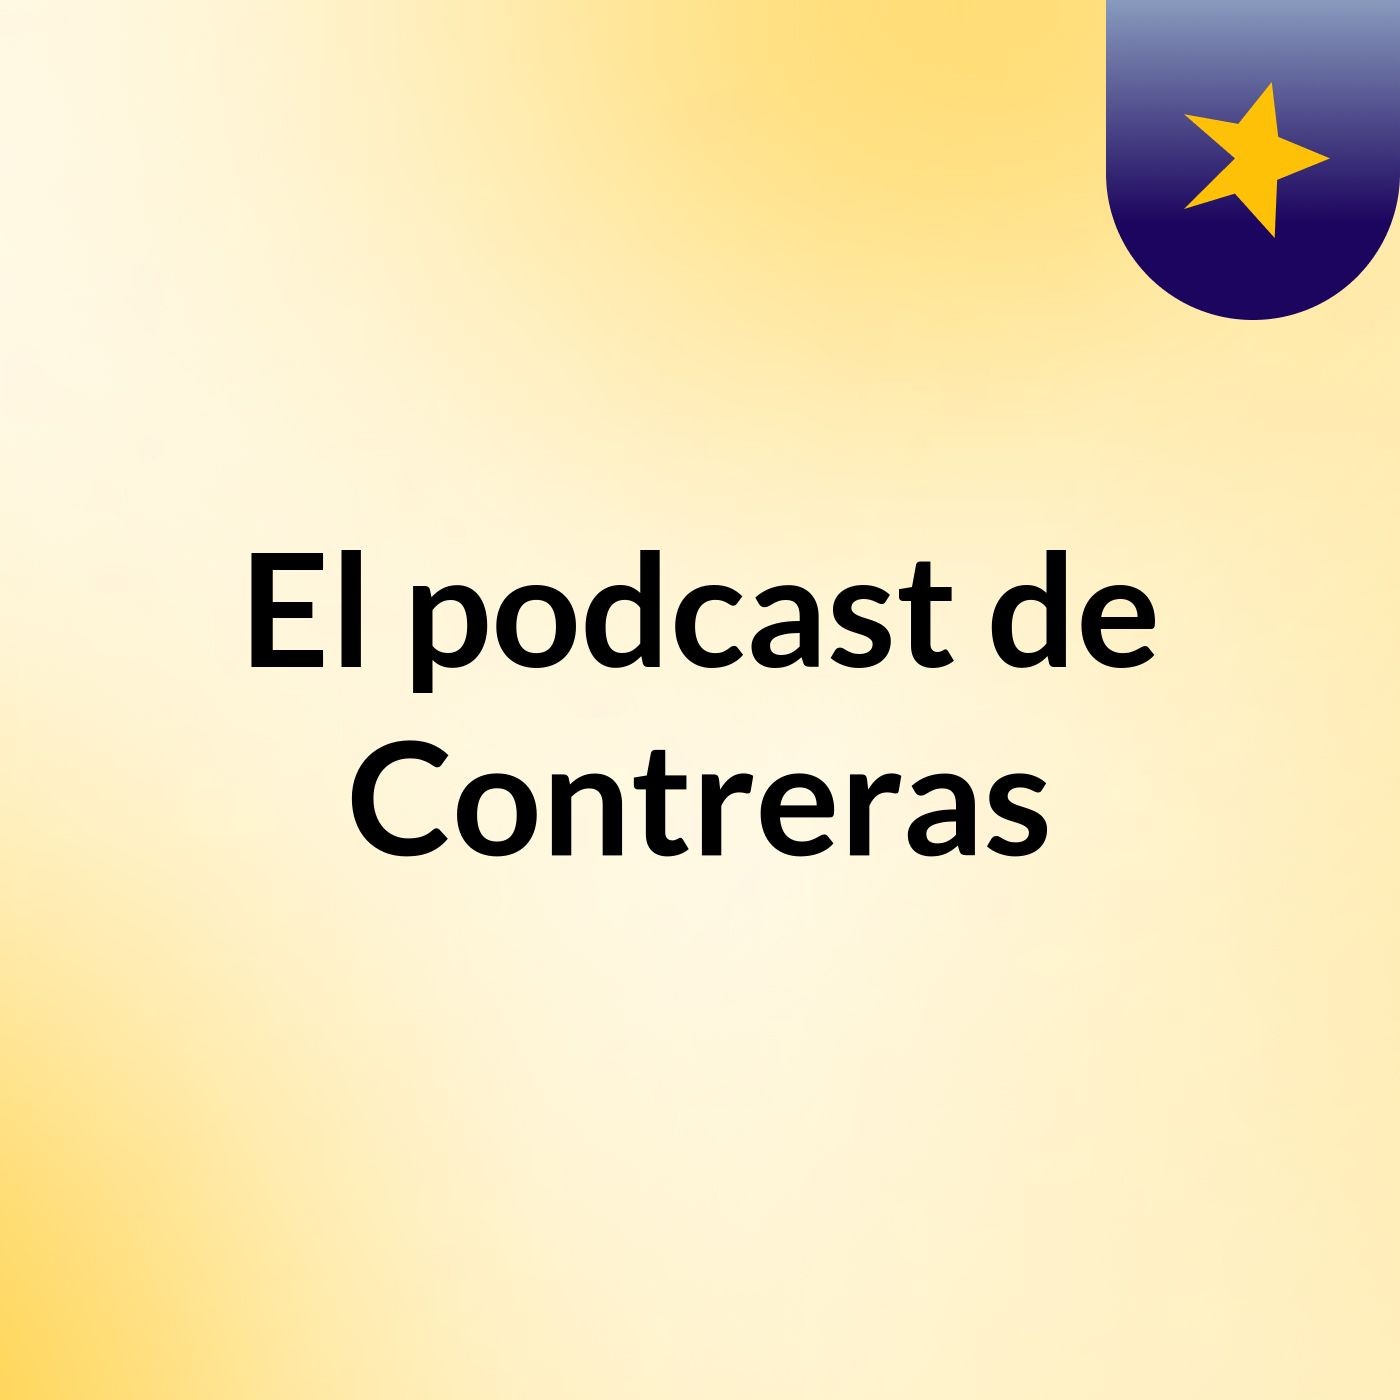 El podcast de Contreras